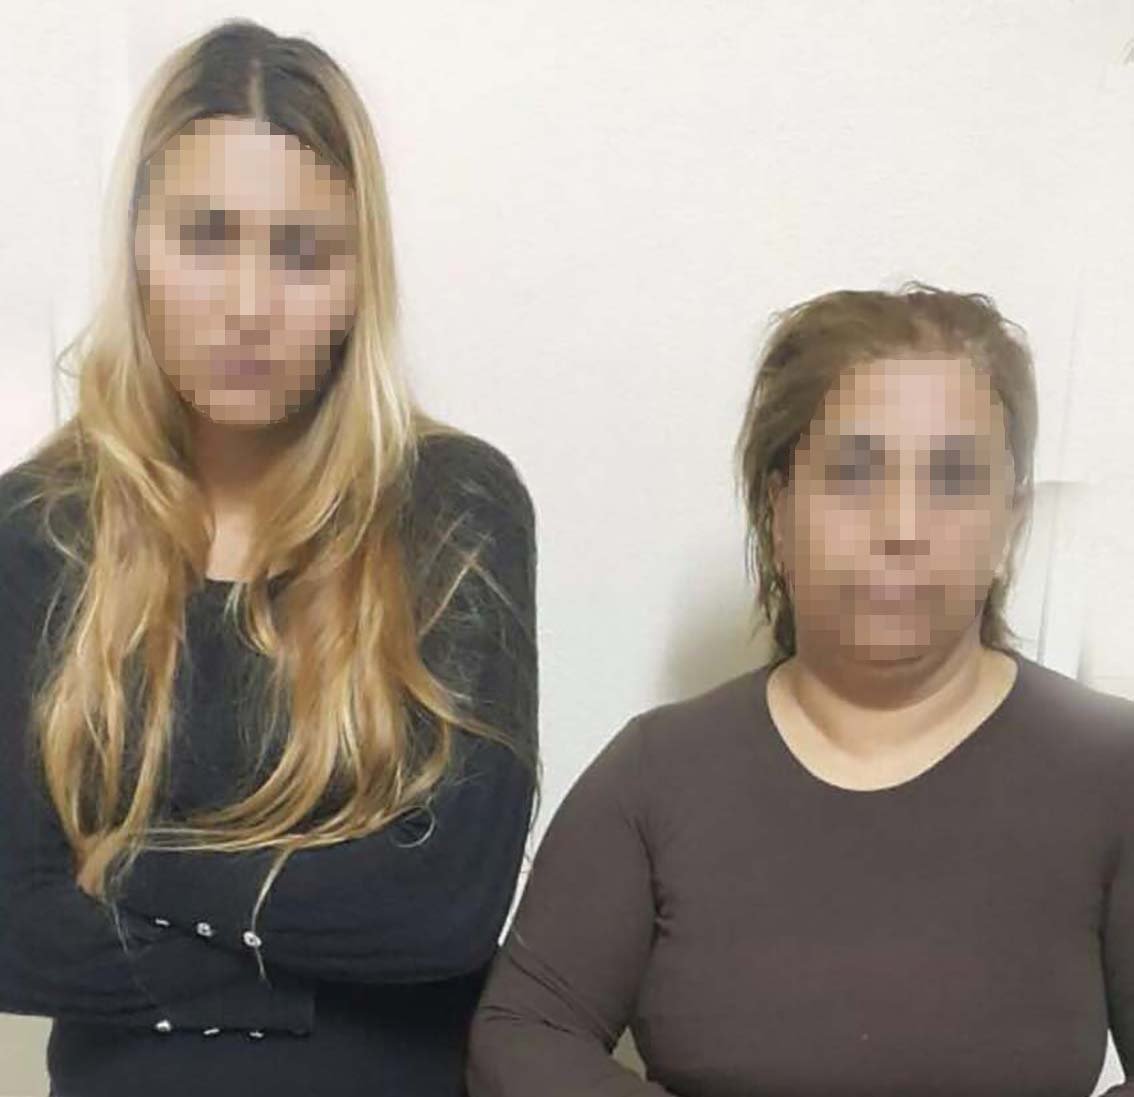 Kelepçeli 2 kadın hırsızlık yaparken yakalandı